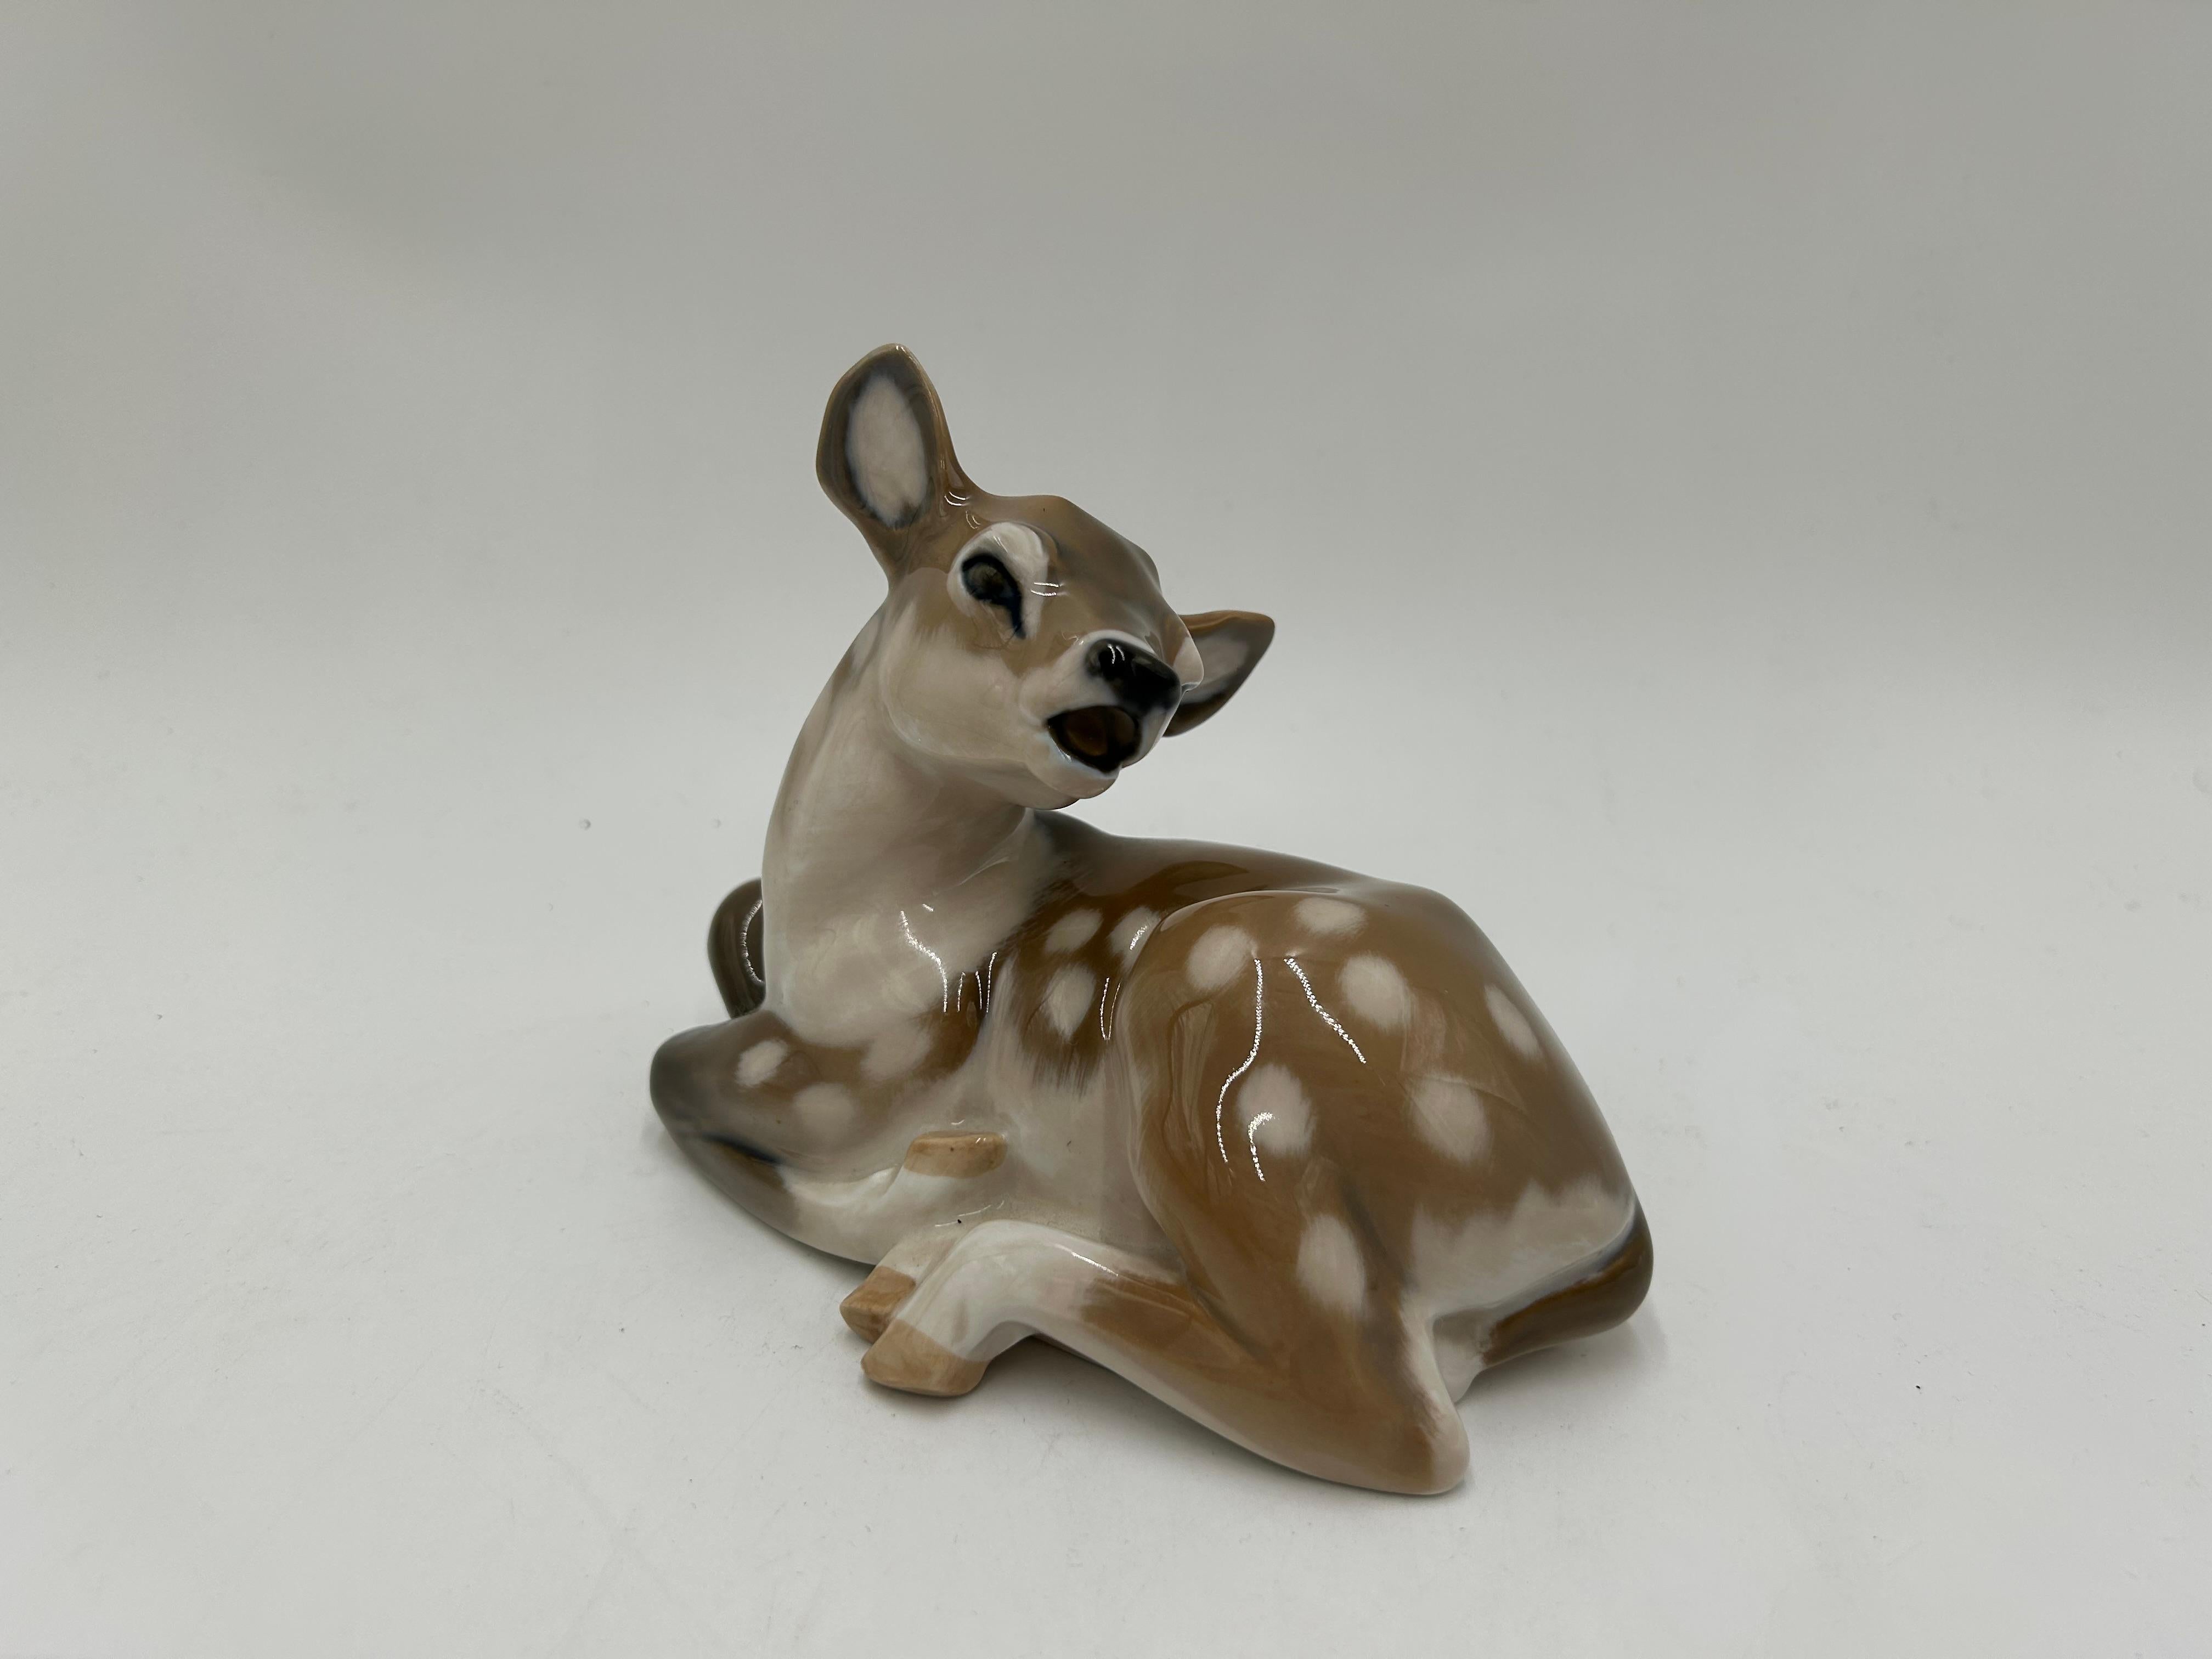 Porzellanfigur eines Hirsches Modell #2609
Produziert von der dänischen Manufaktur Royal Copenhagen
Die Marke wurde 1969-1973 verwendet.
Sehr guter Zustand, keine Schäden
Maße: Höhe: 13cm
Breite: 16cm
Tiefe: 9cm